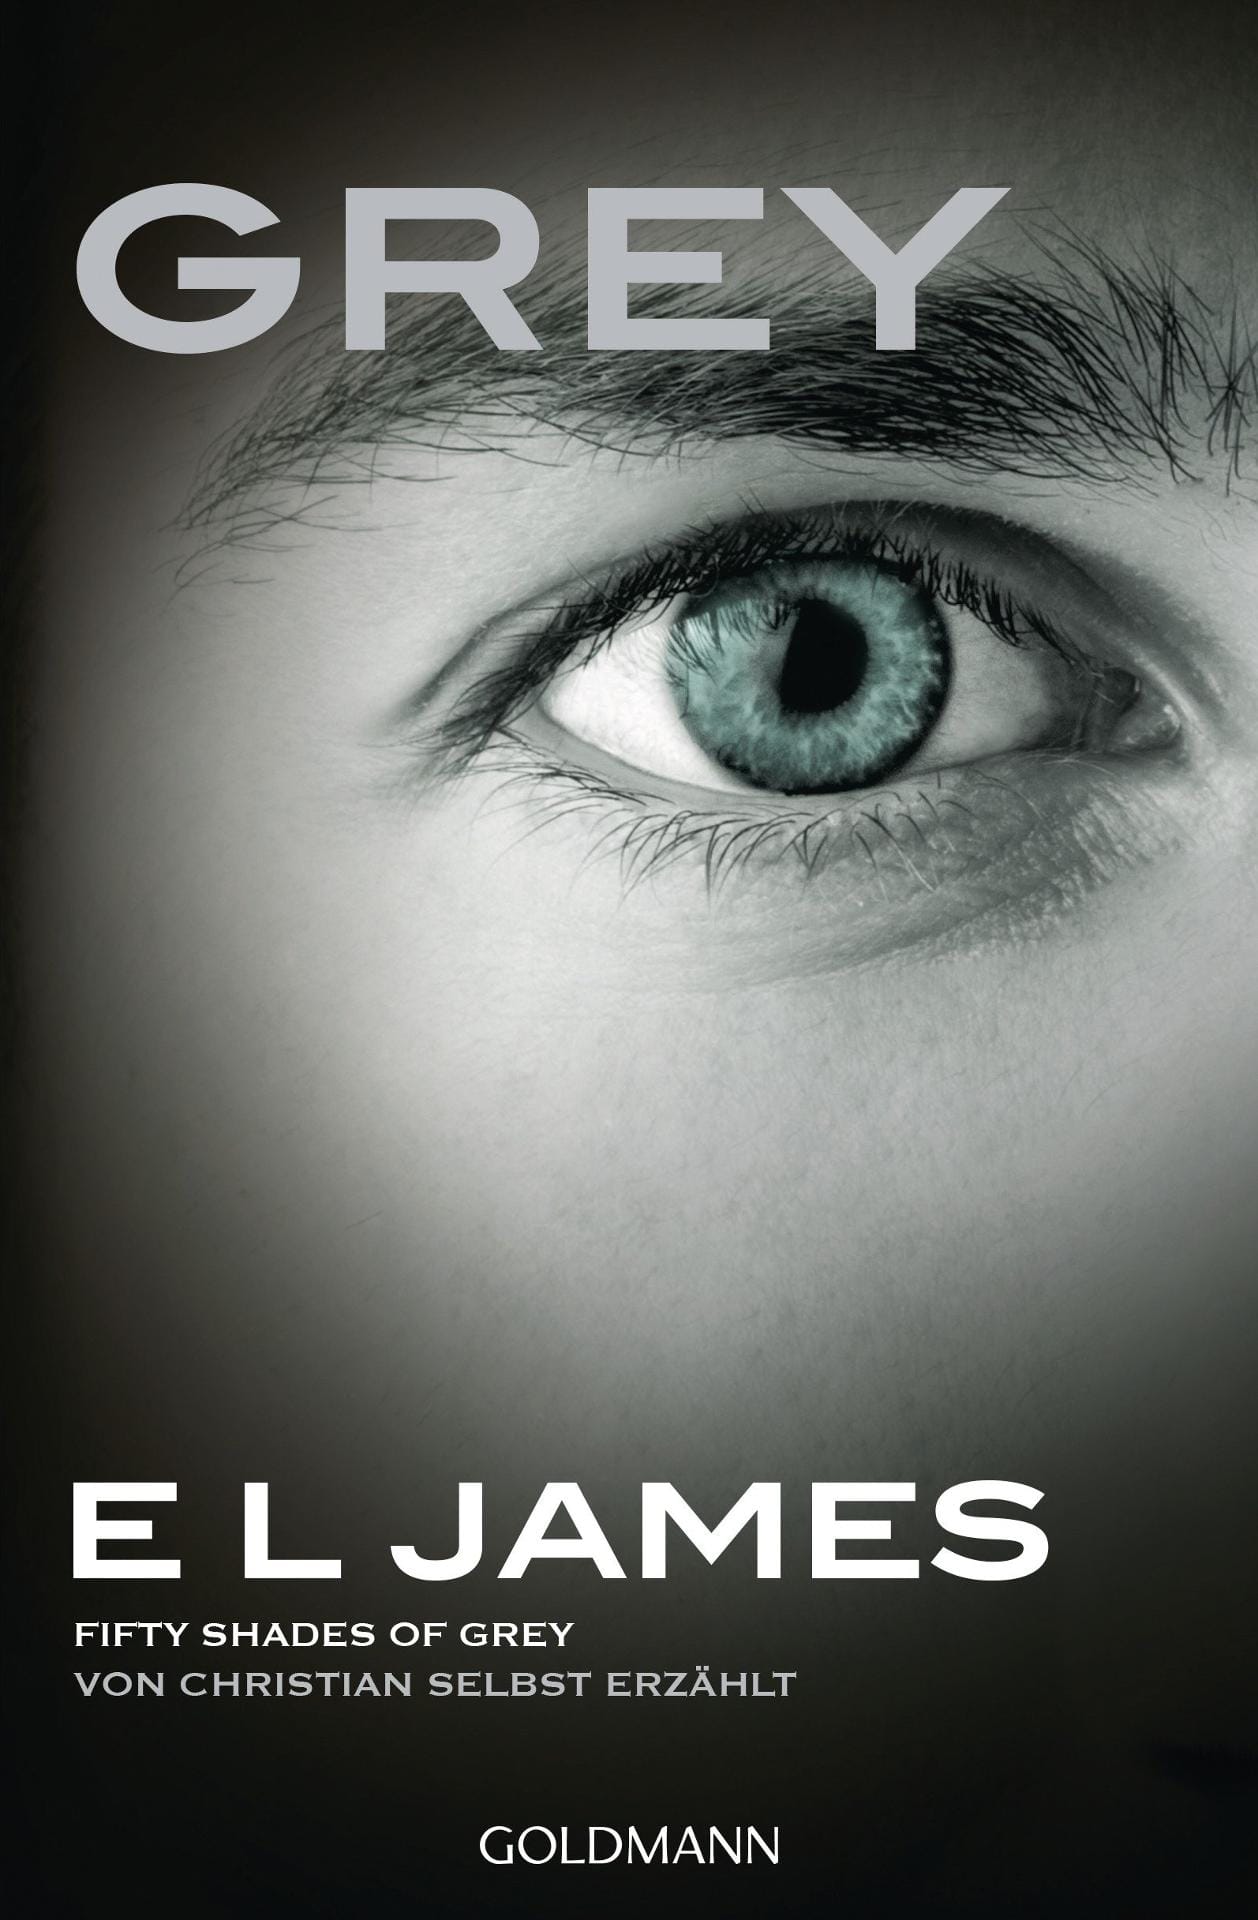 "Grey" von E.L. James